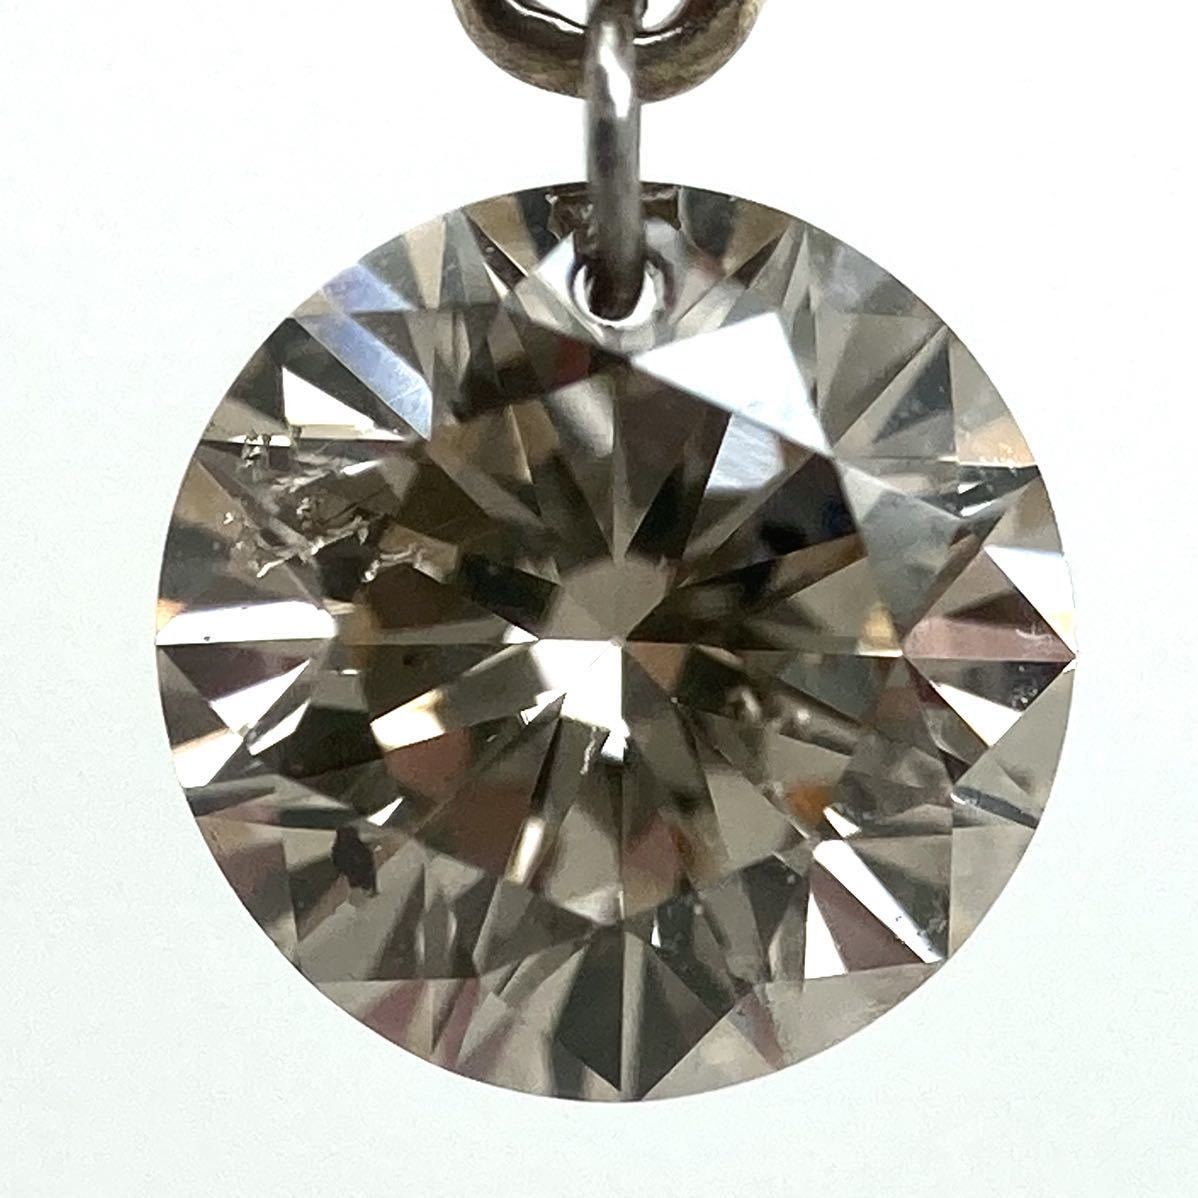 計1.57ct《K18YG 天然ダイヤモンドピアス》3.8g 0.76ct 0.81ct diamond pierce earring ジュエリー jewelry EB8_画像5